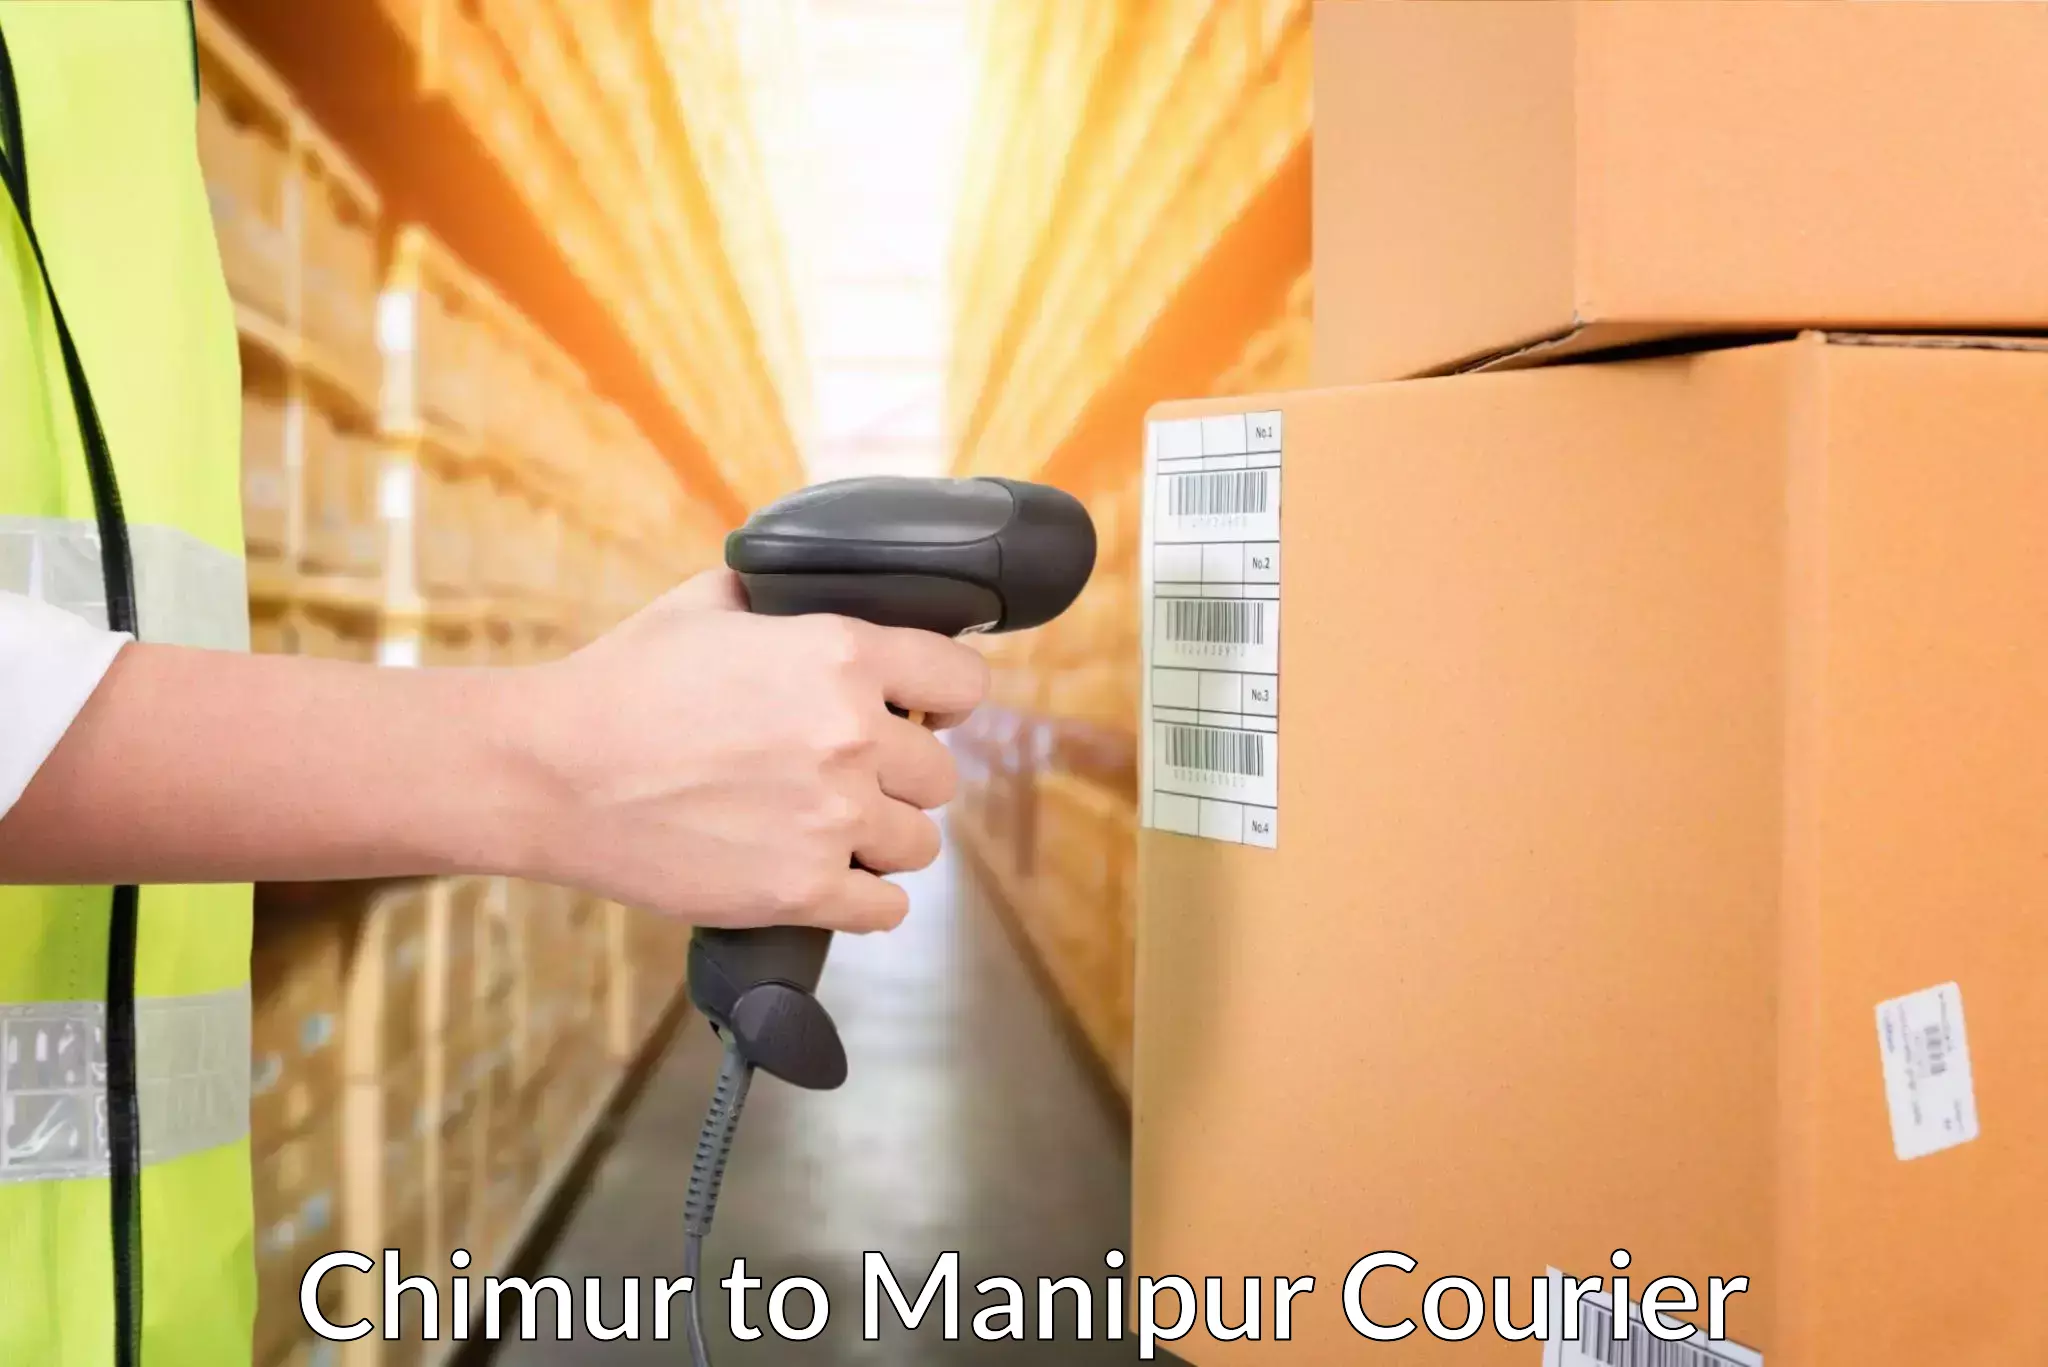 Efficient parcel service Chimur to Manipur